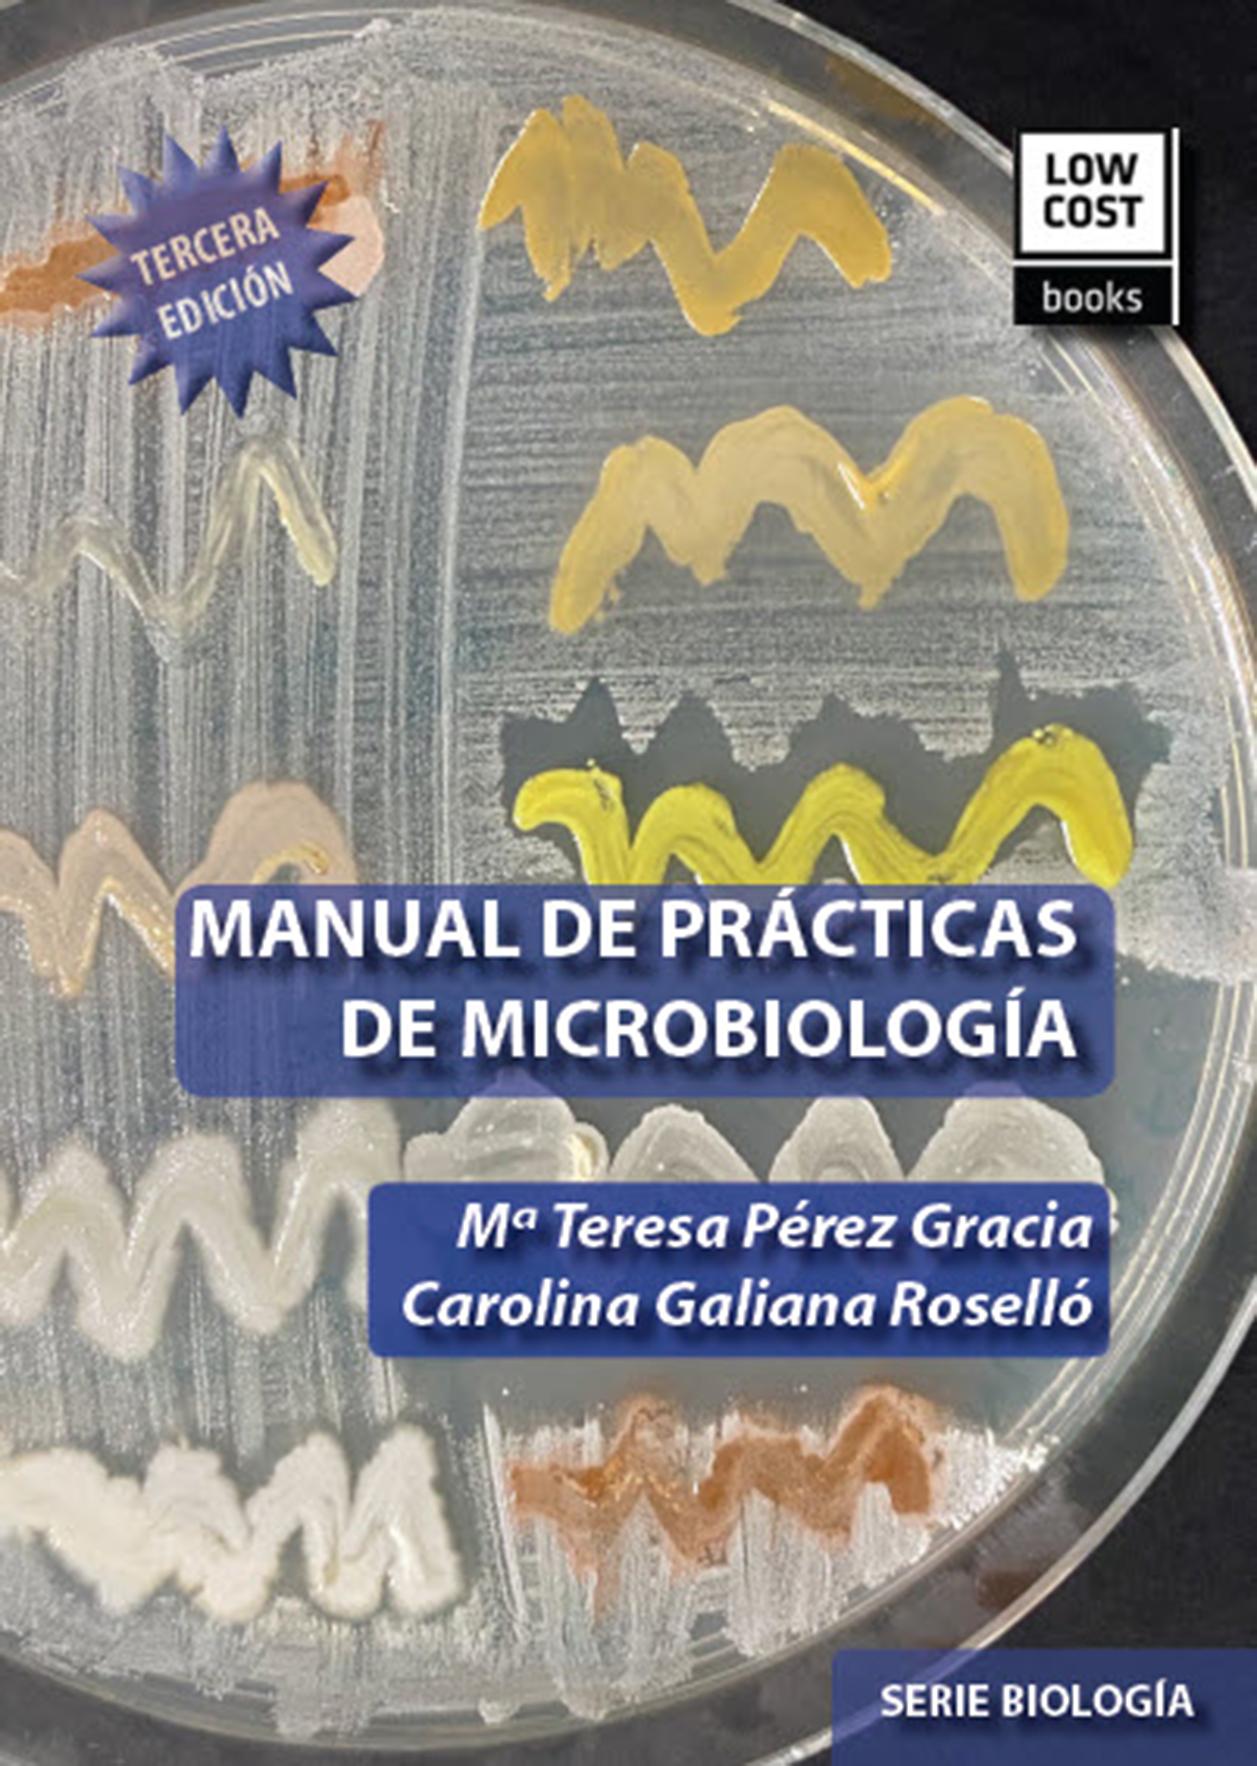 MANUAL DE PRÁCTICAS DE MICROBIOLOGÍA (3.ª Edición. 2020)